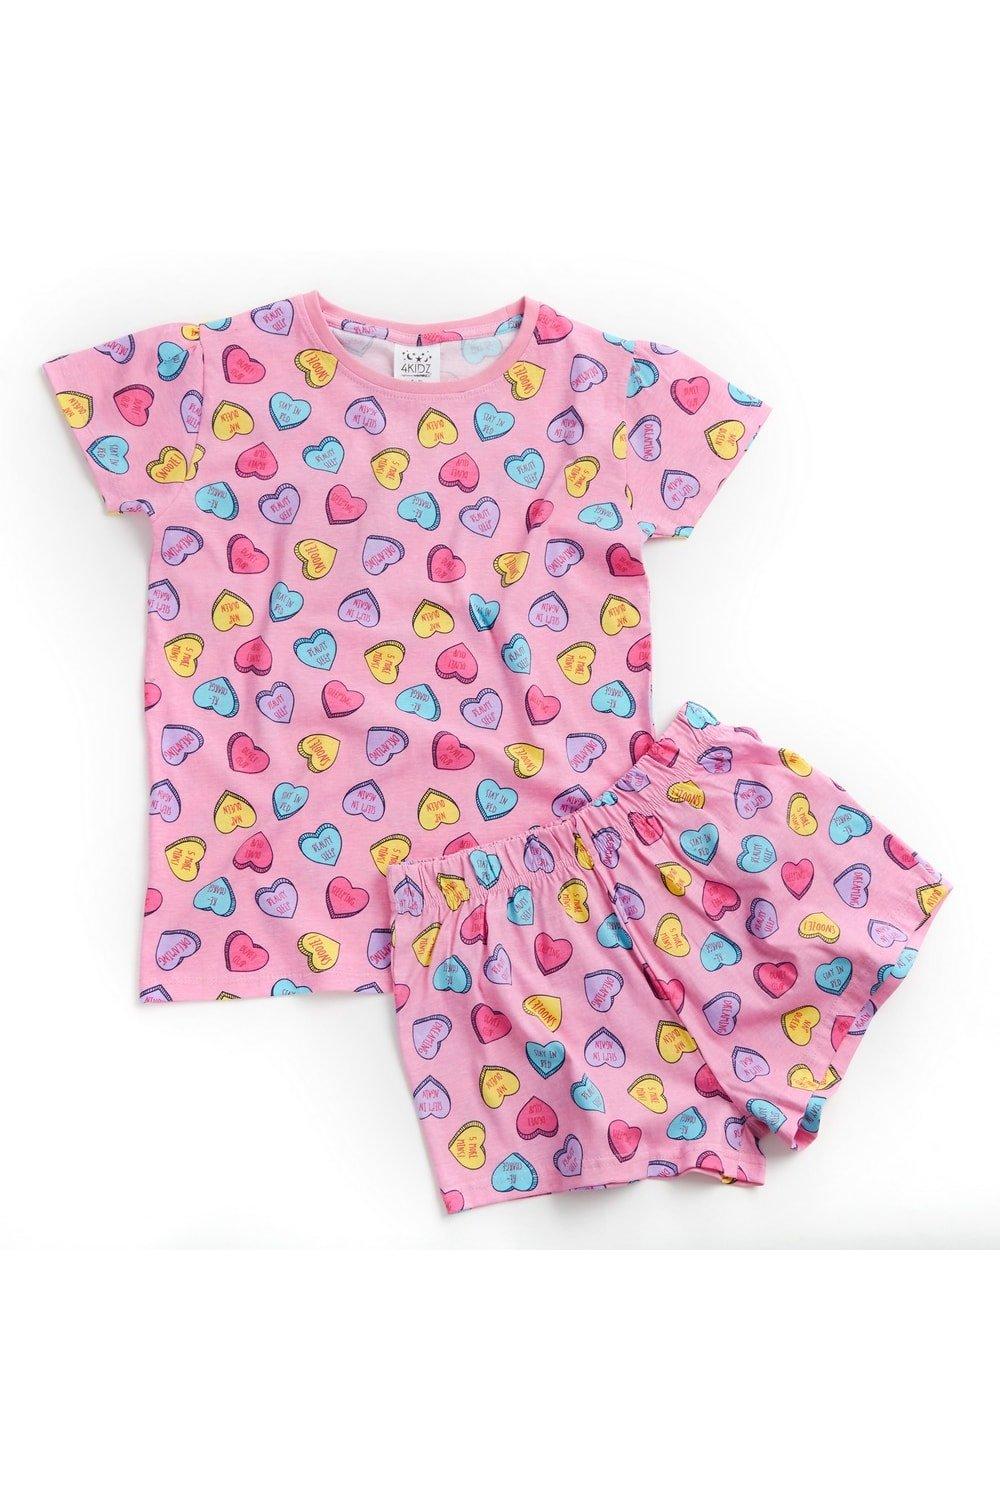 4Kidz Love Heart Pyjama Set